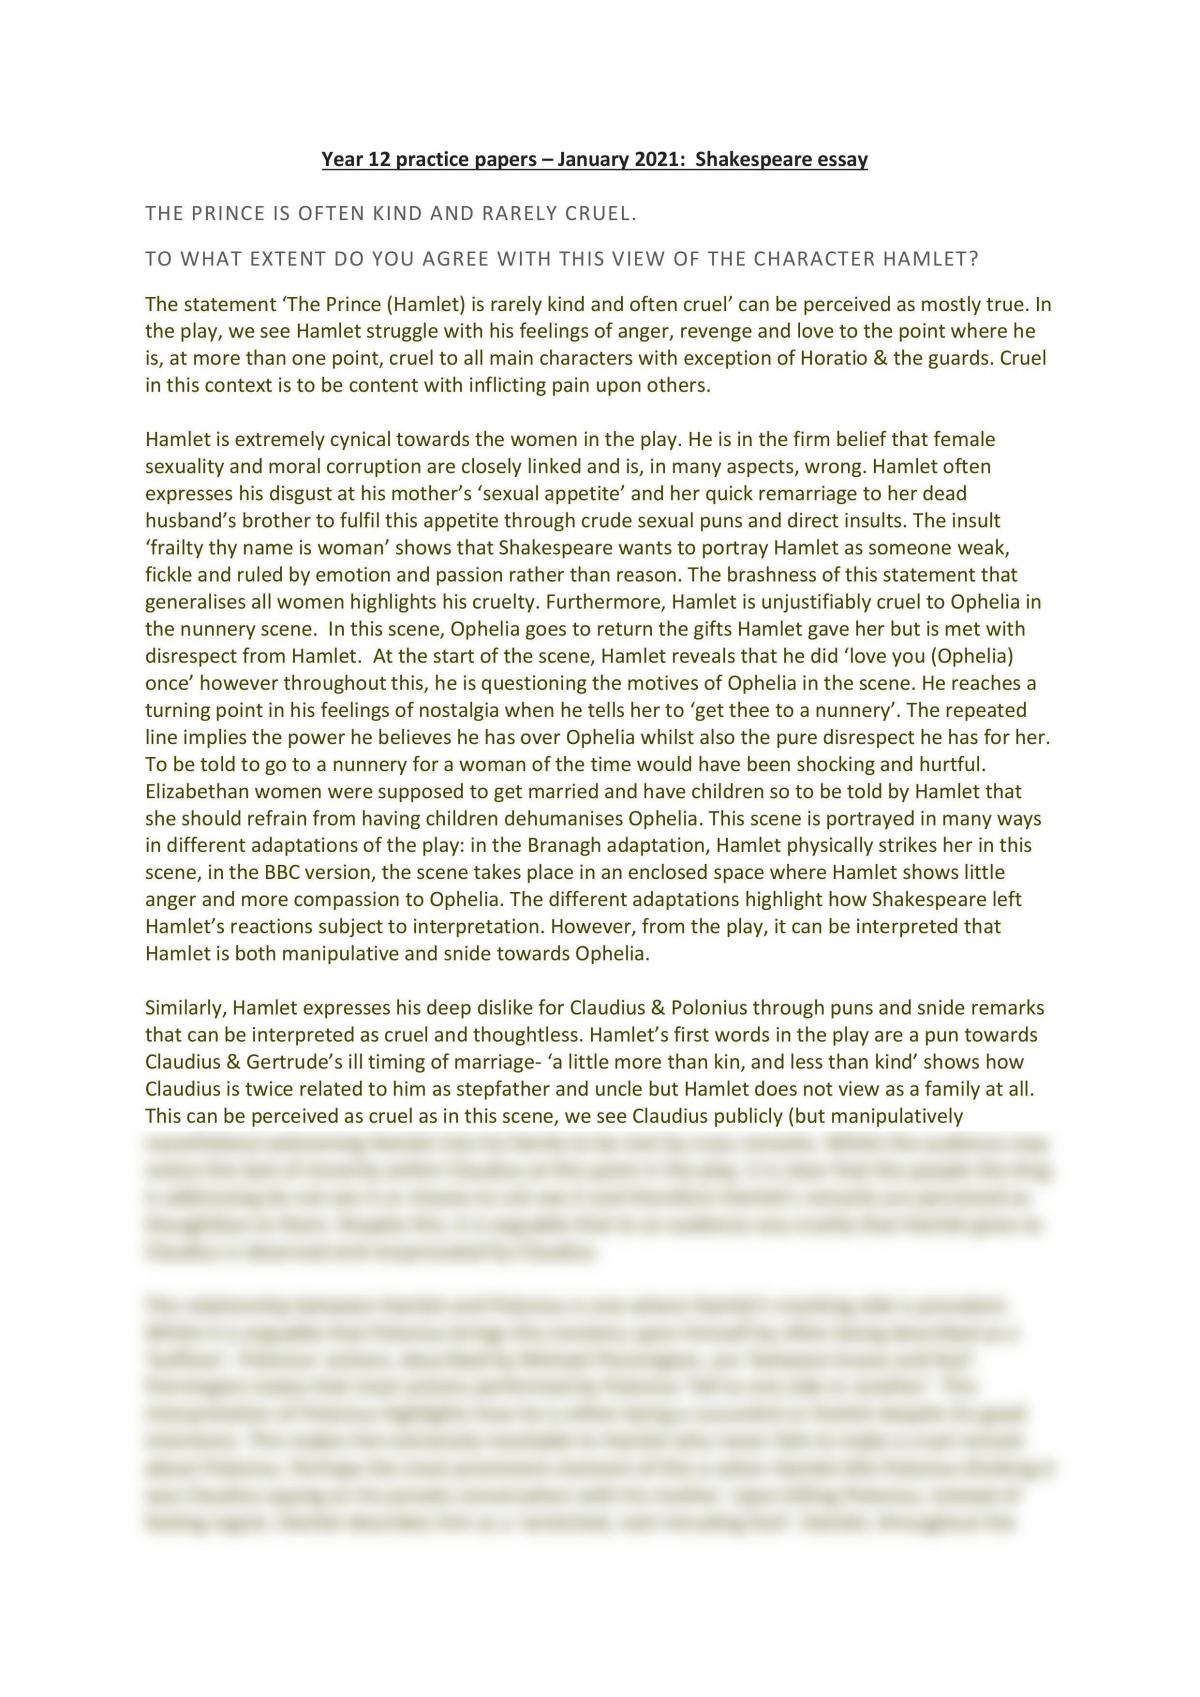 hamlet essay topics pdf